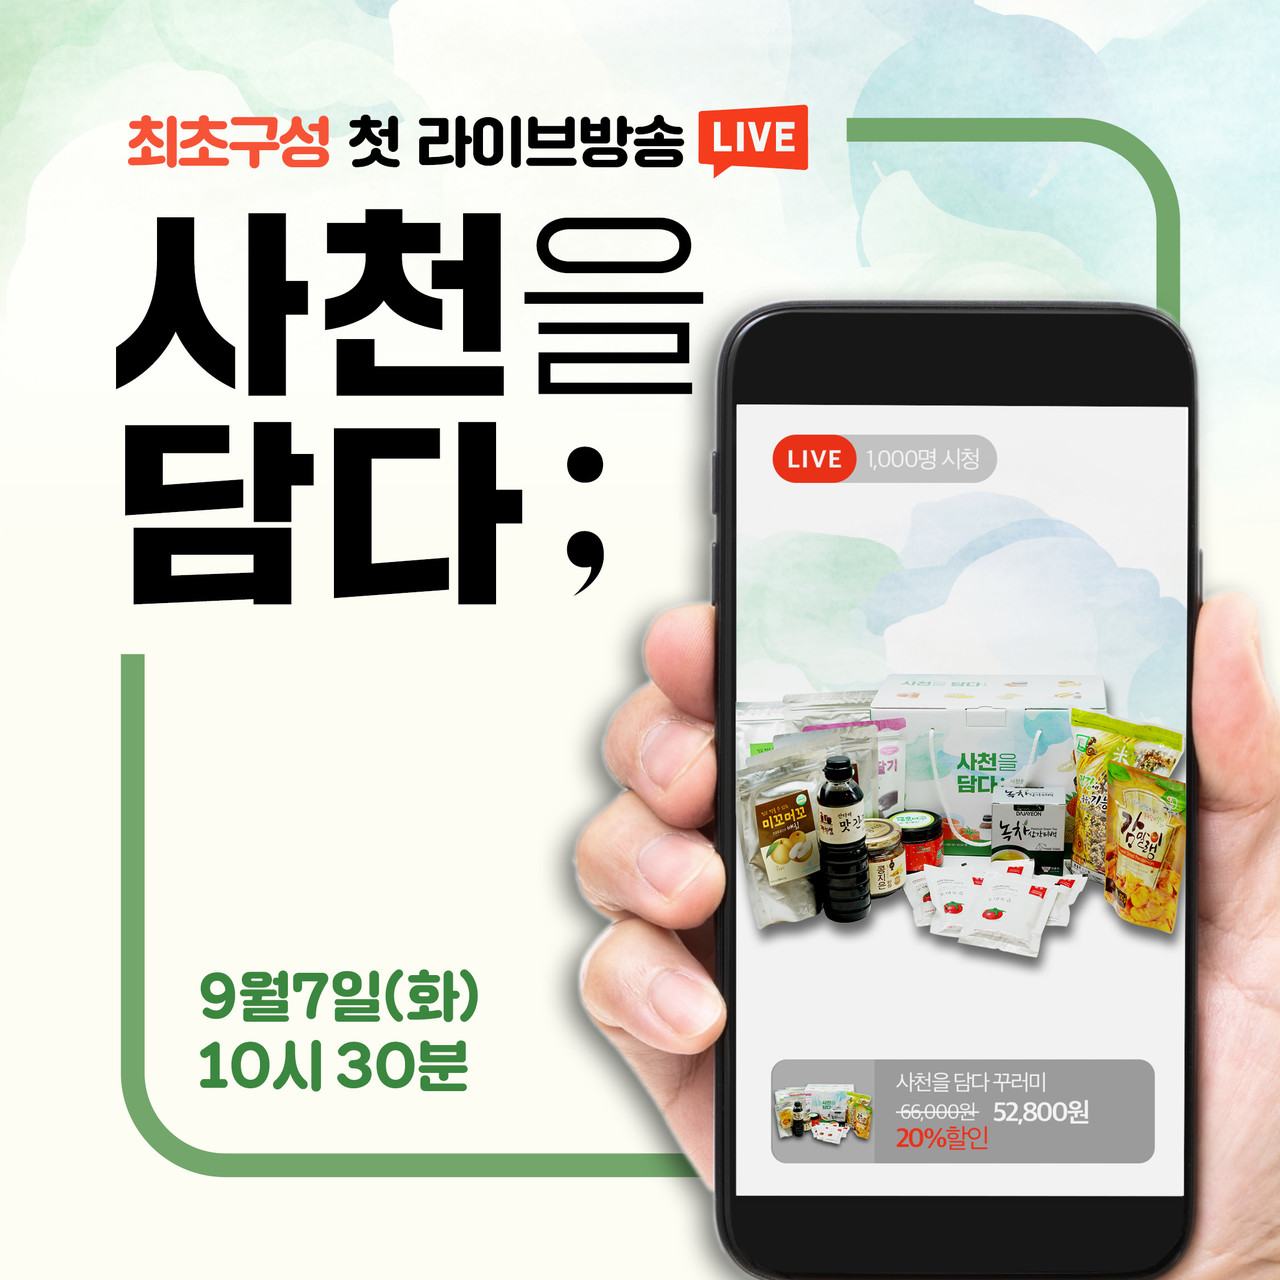 사천시벤처농업협회(회장 조현국)이 인터넷 실시간 판매방송인 ‘라이브 커머스’로 사천지역 농·특산물을 판매한다.